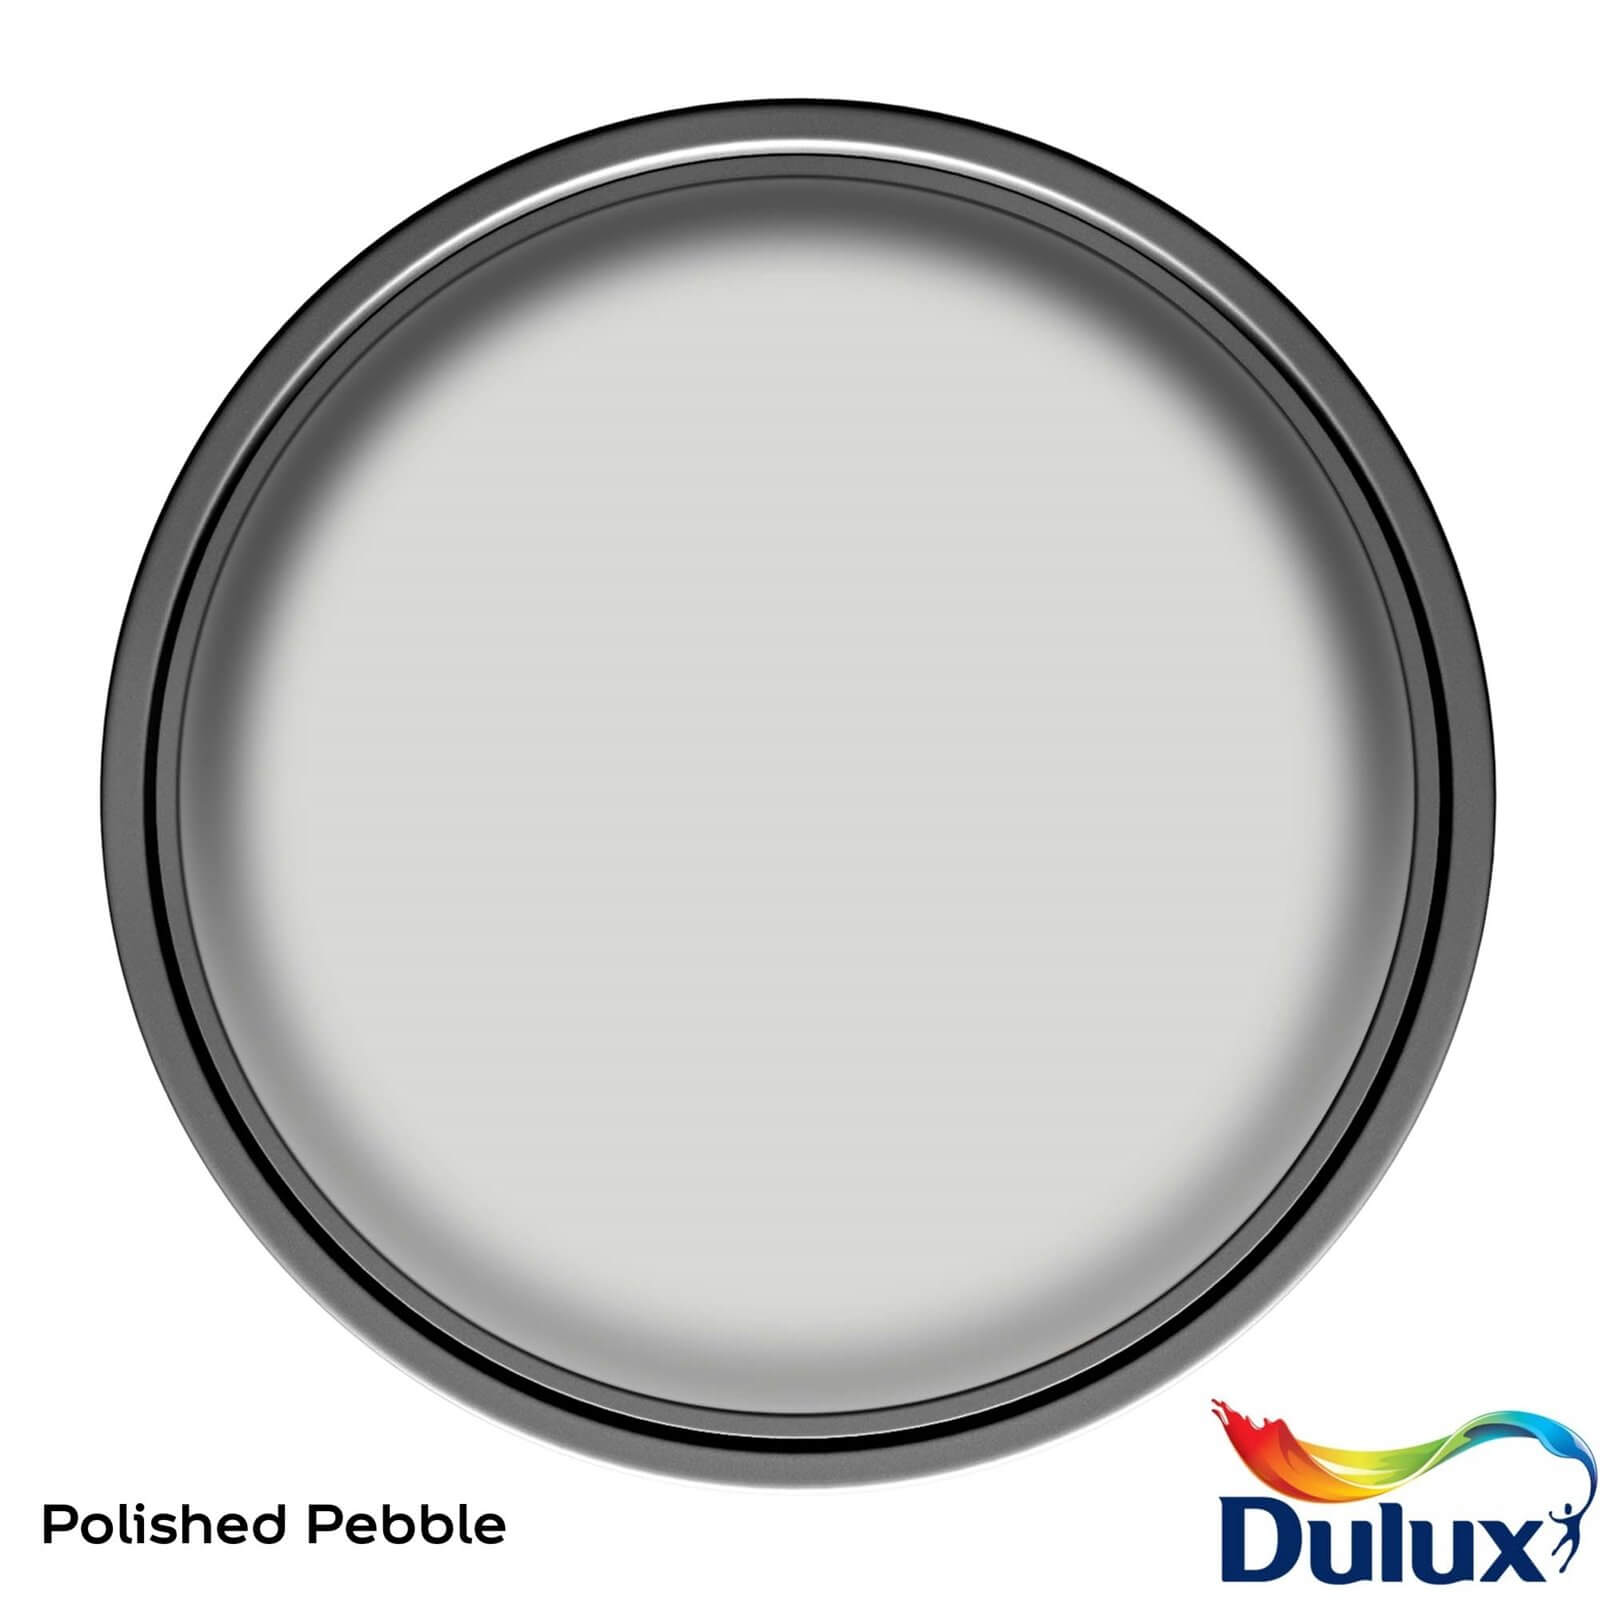 Dulux Easycare Kitchen Polished Pebble Matt Paint - 2.5L